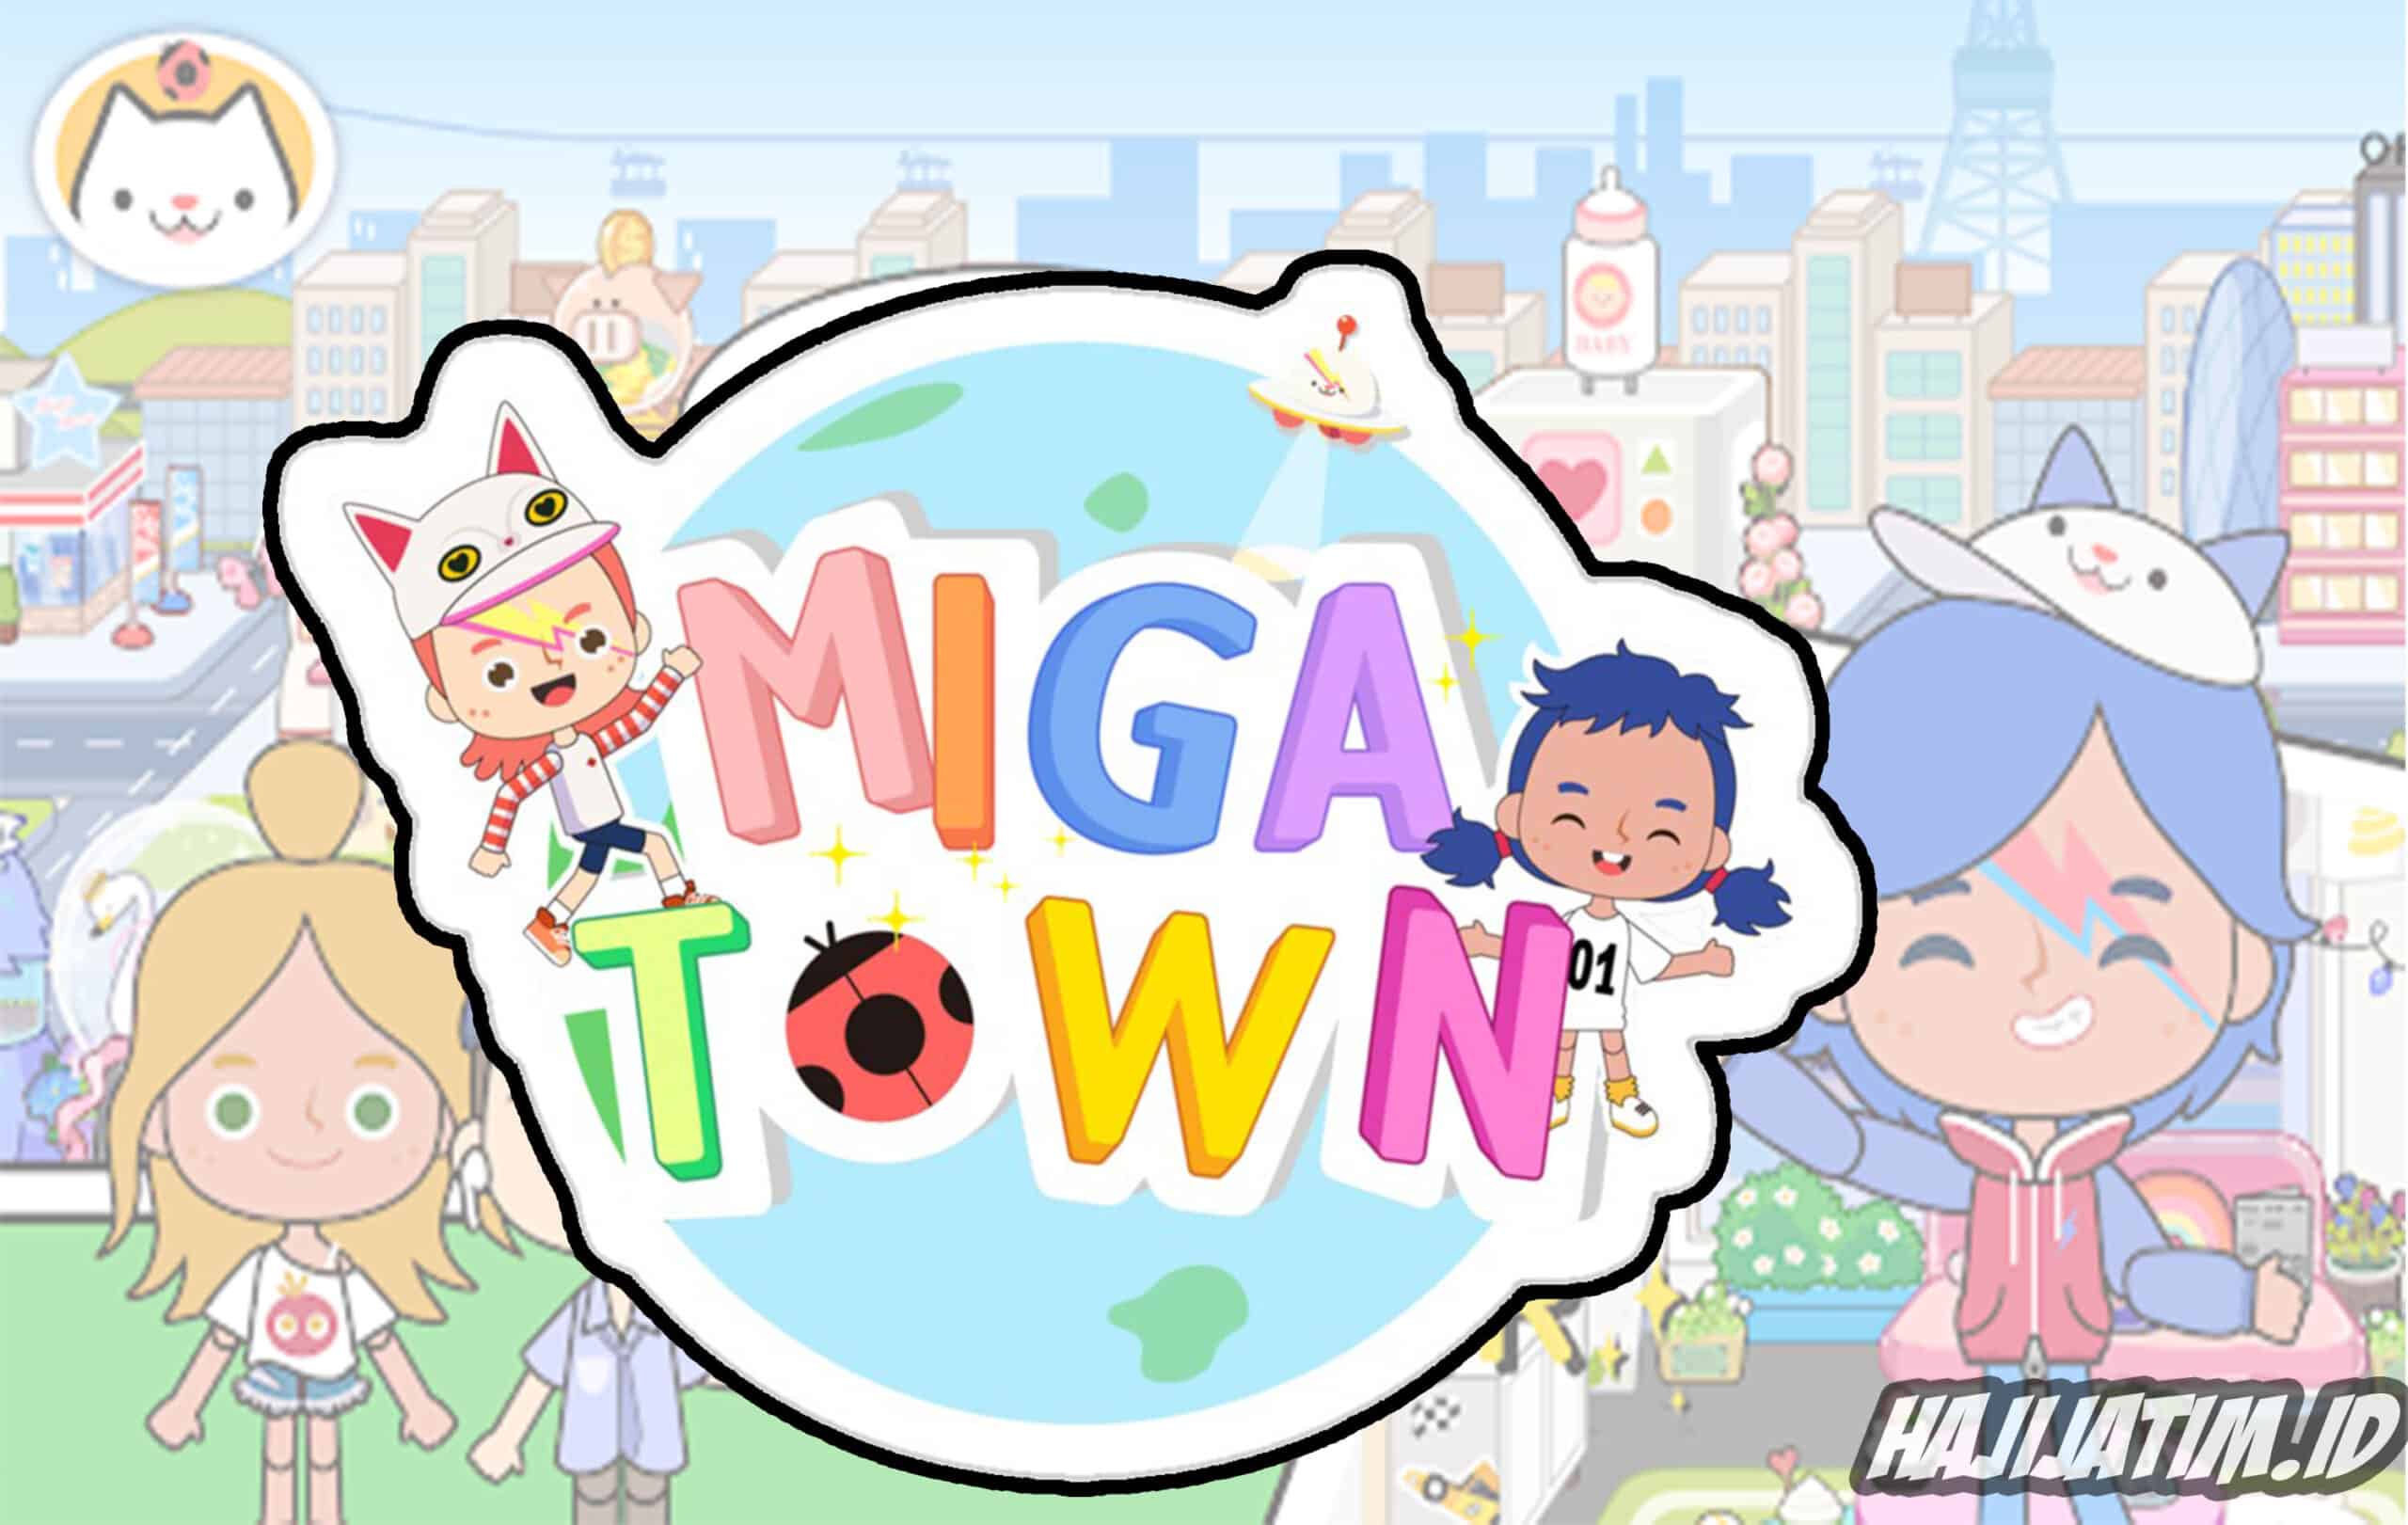 Miga Town Mod Apk